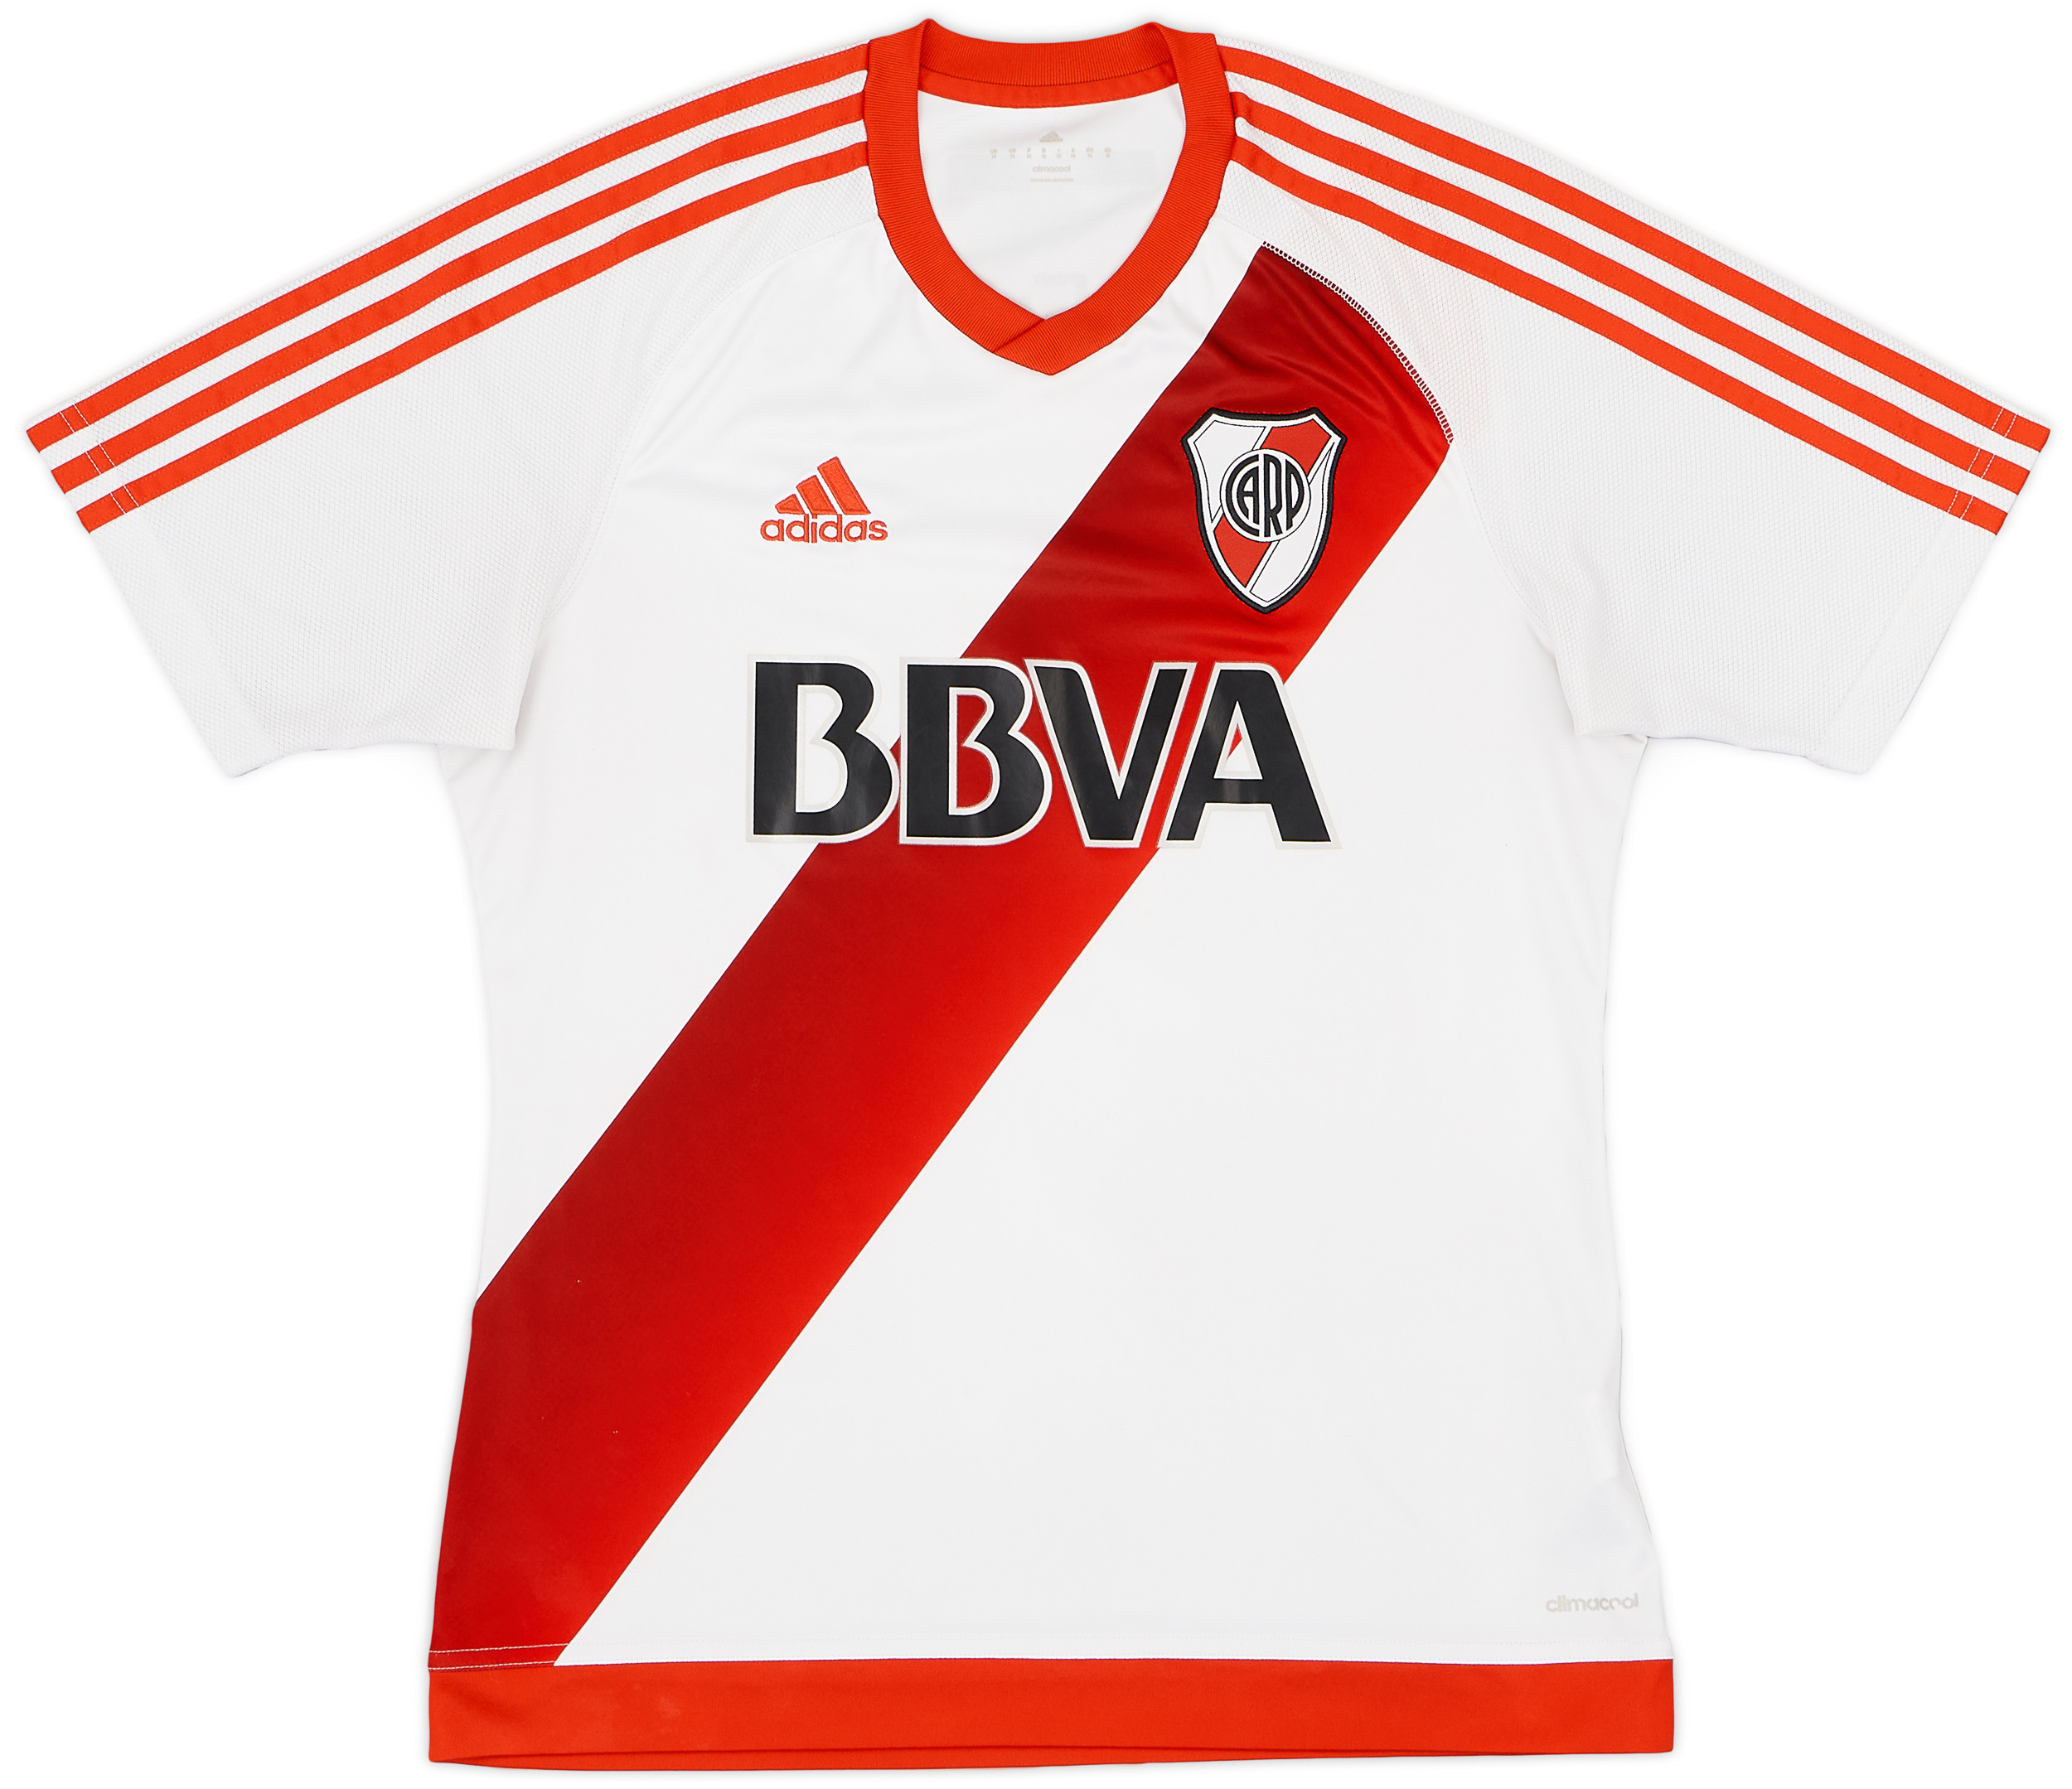 River Plate  home camisa (Original)